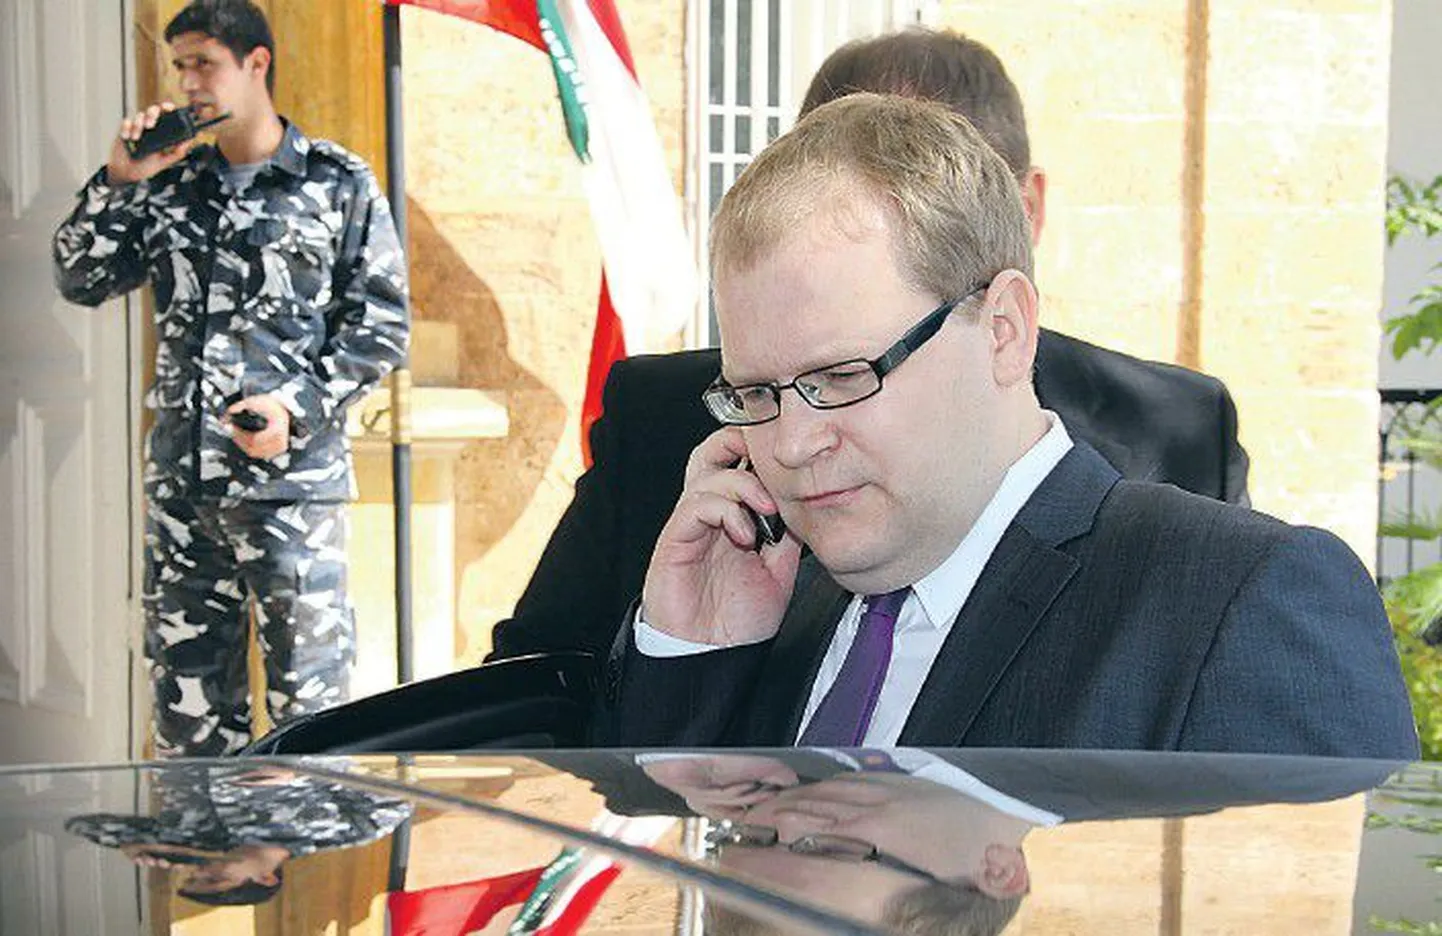 28 марта министр иностранных дел Эстонии Урмас Паэт находился в Ливане, чтобы помочь разобраться с ситуацией.